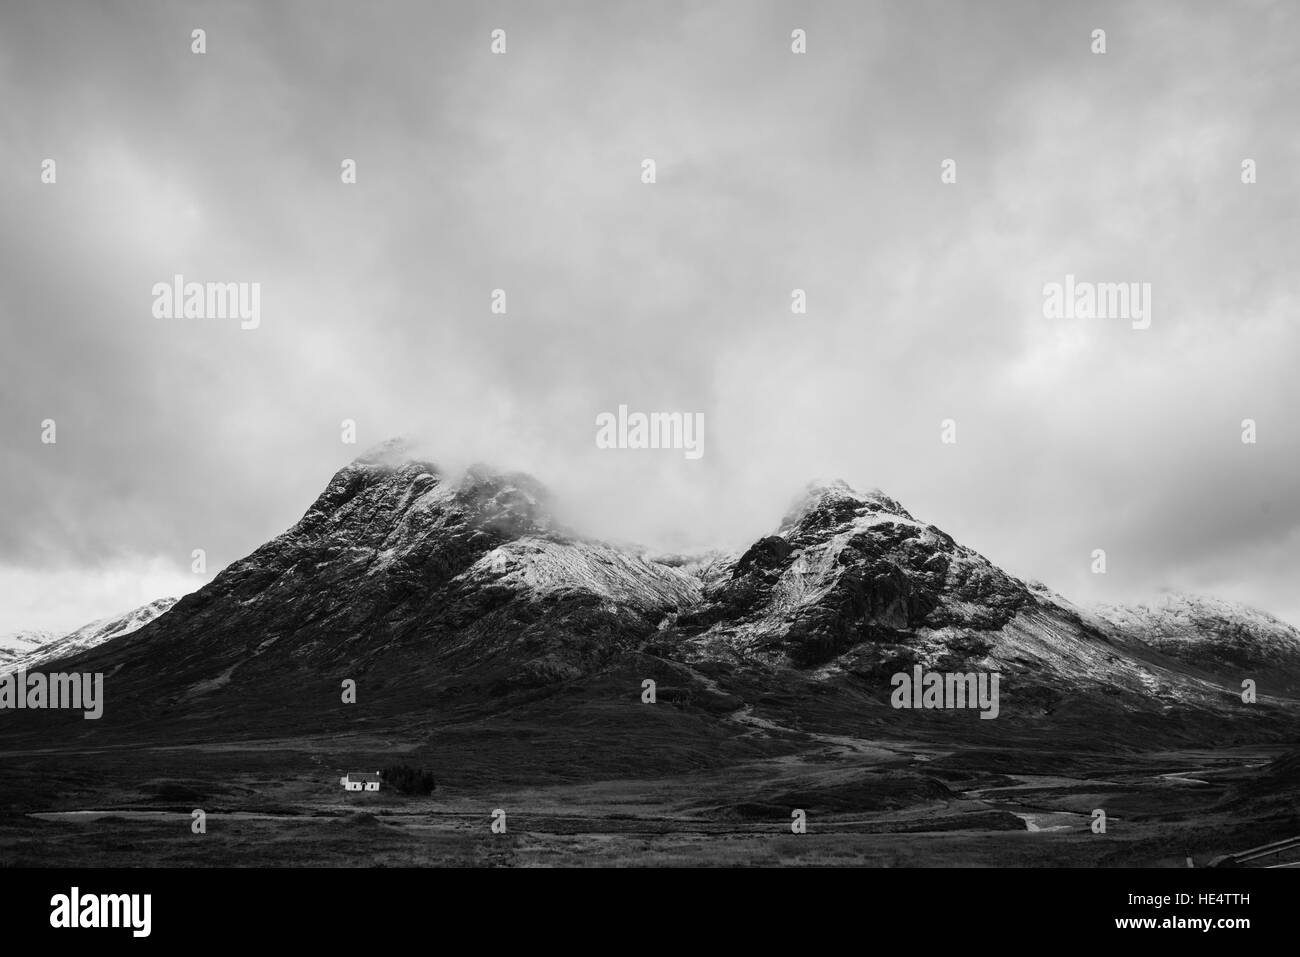 Lone sotto casa buchaille etive mor nelle Highlands scozzesi, Glencoe Scozia. Foto Stock